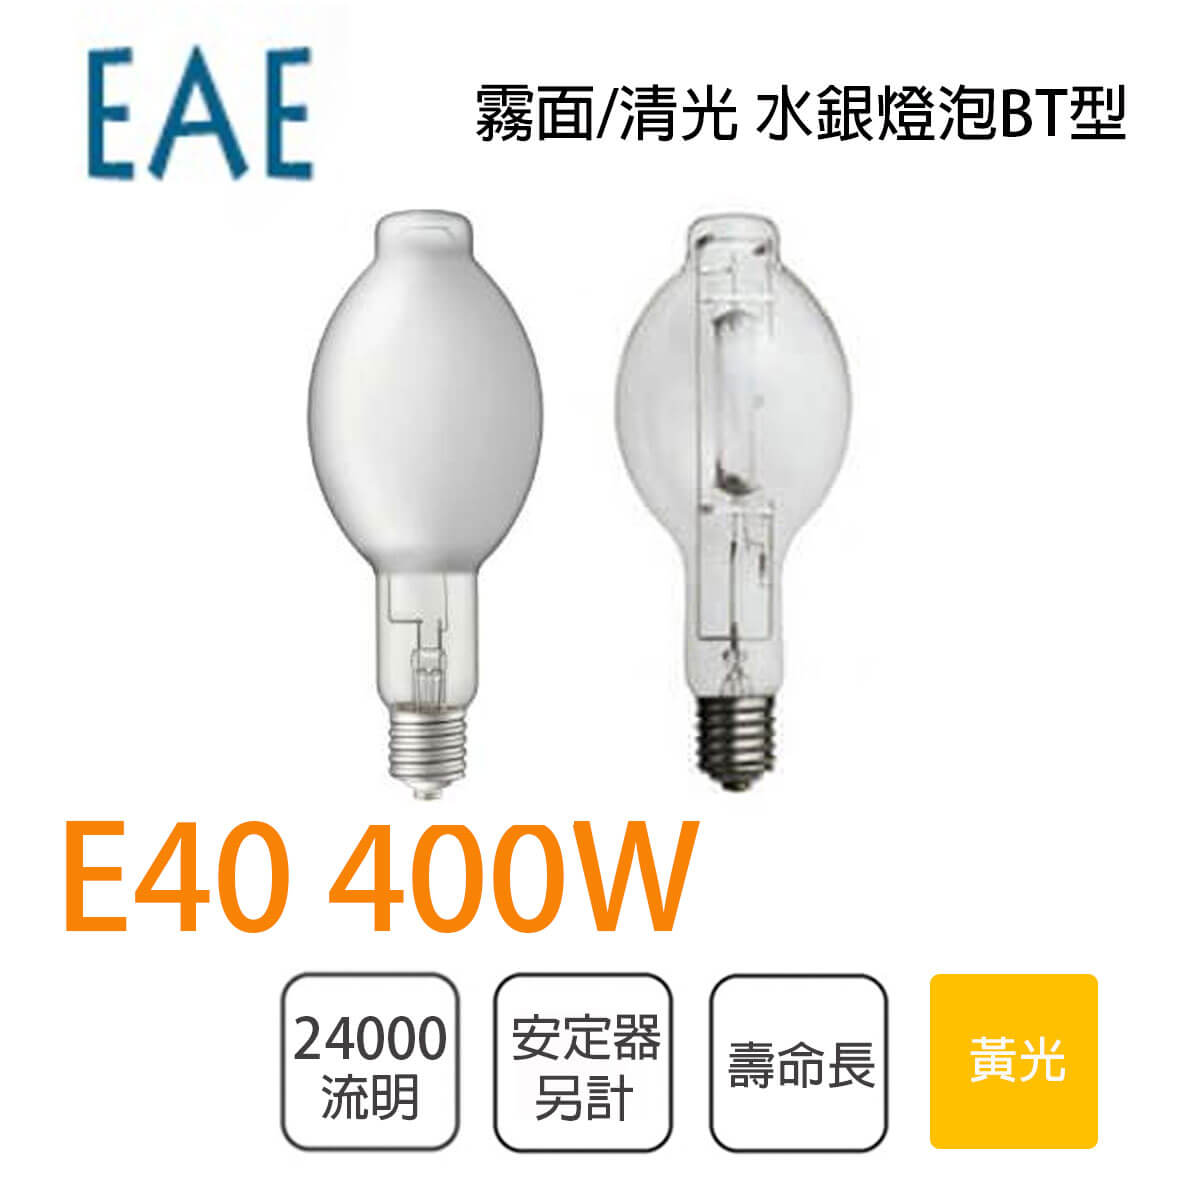 400W水銀燈- 比價撿便宜- 優惠與推薦- 2023年5月